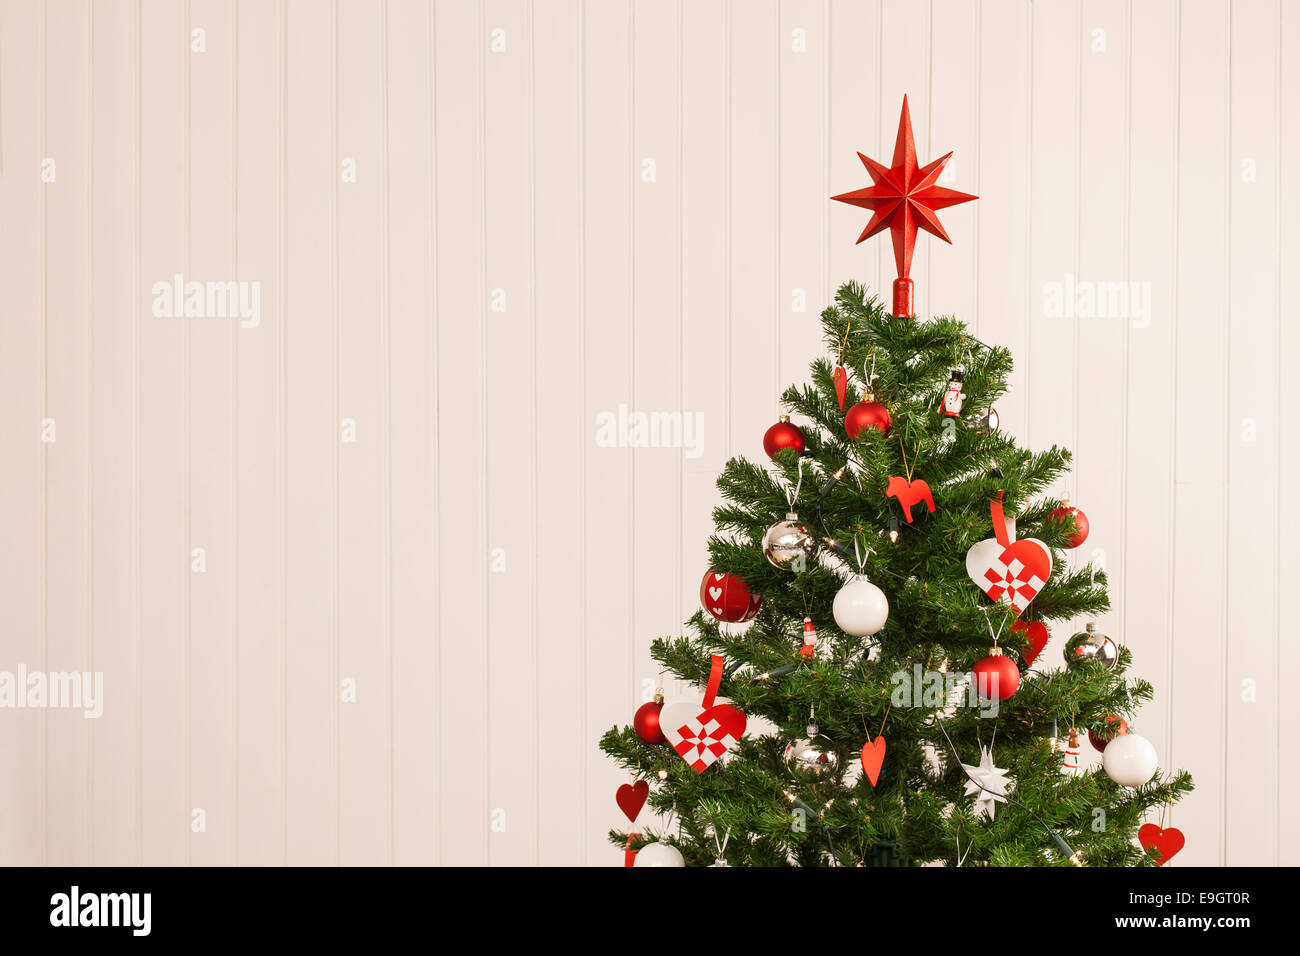 Dettaglio di un bellissimo albero di Natale insieme contro una parete in legno per lo spazio di copia Foto Stock